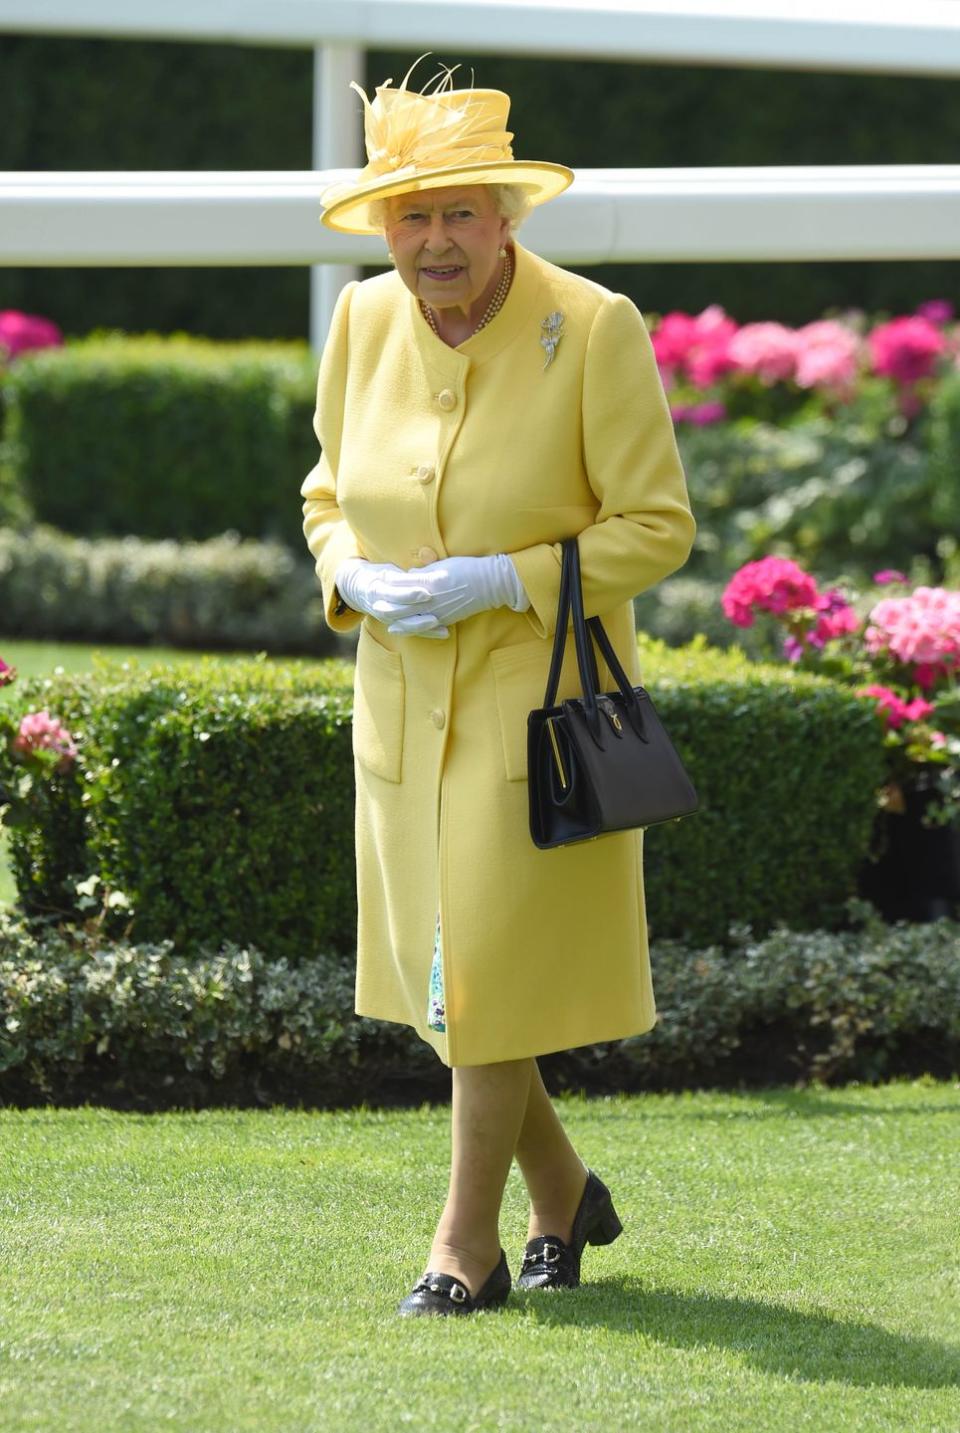 25) Queen Elizabeth II: Clasped Hands